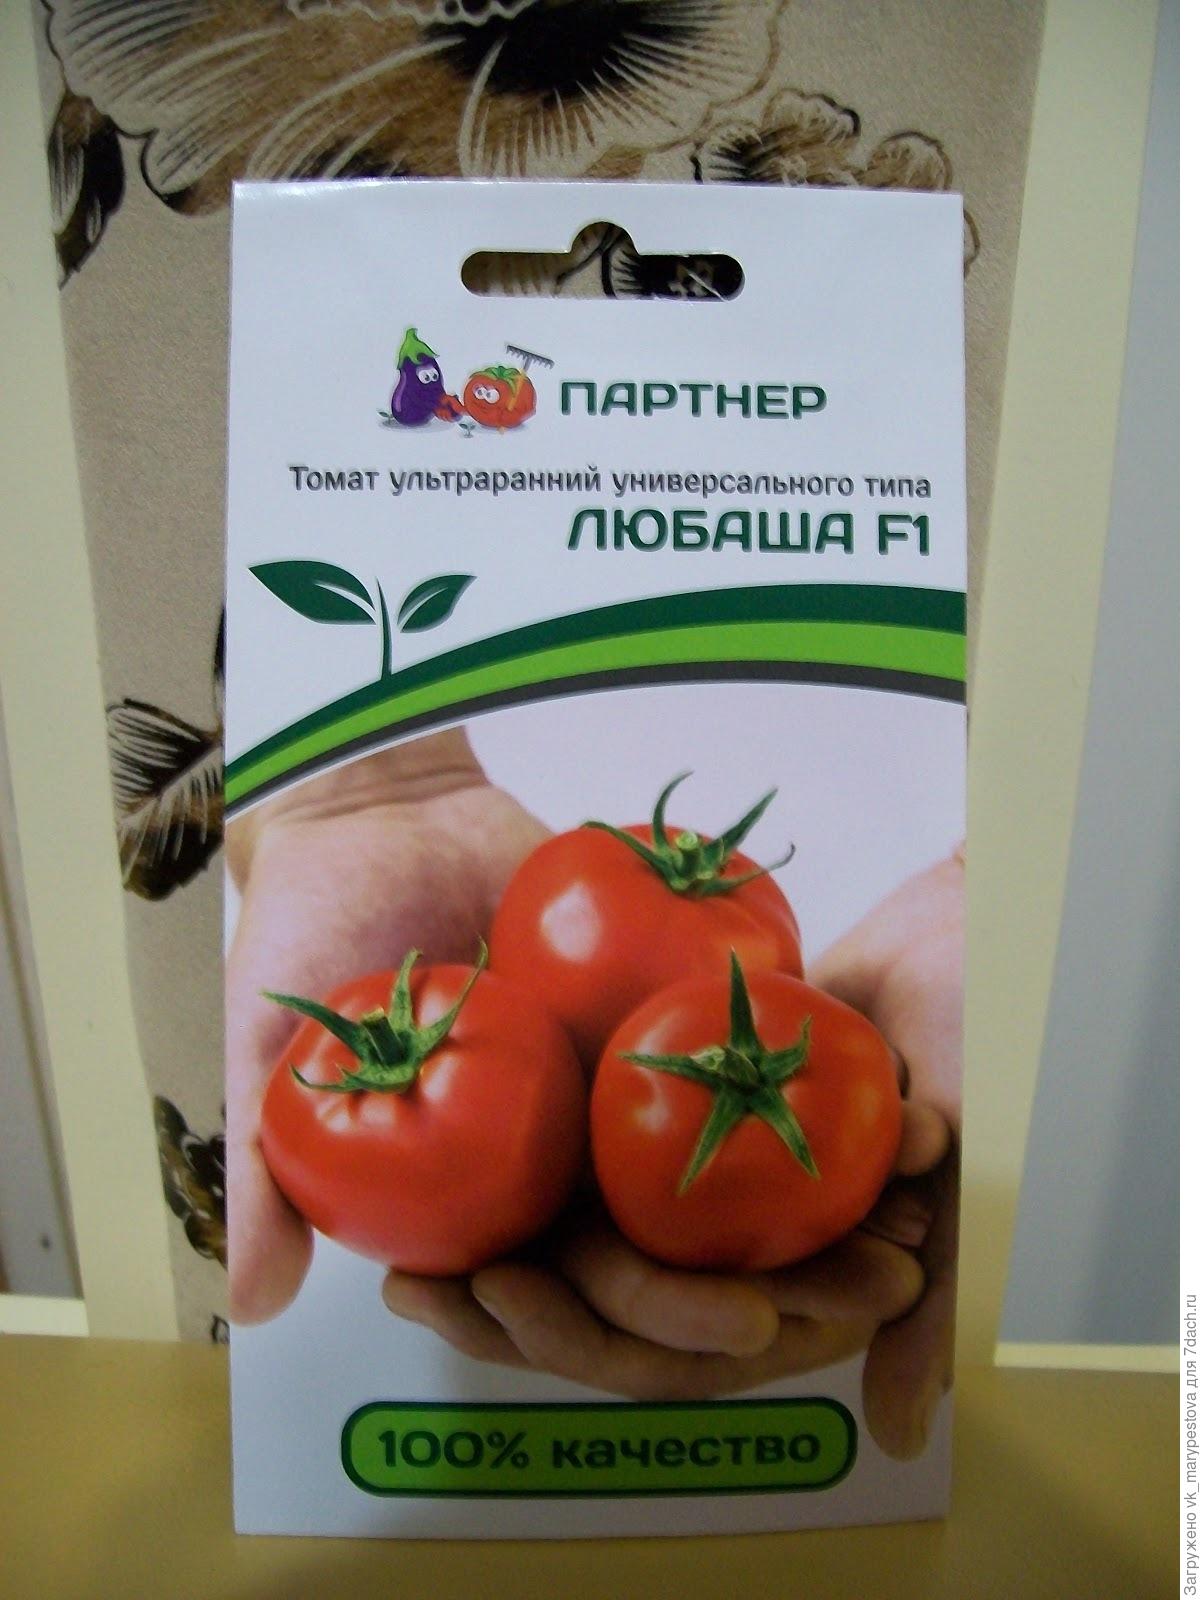 Партнер томат ультраранний